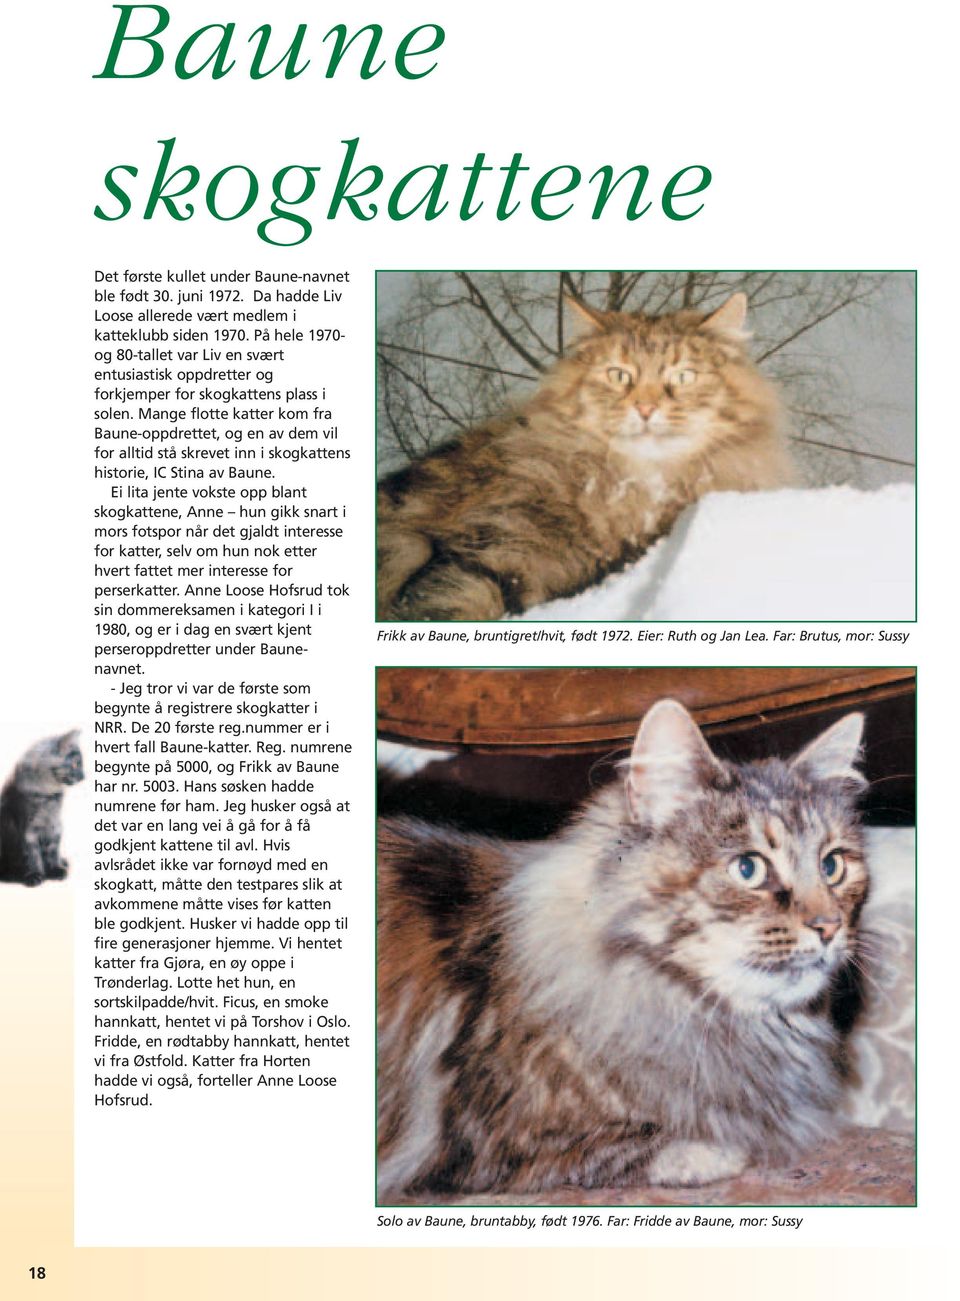 Mange flotte katter kom fra Baune-oppdrettet, og en av dem vil for alltid stå skrevet inn i skogkattens historie, IC Stina av Baune.